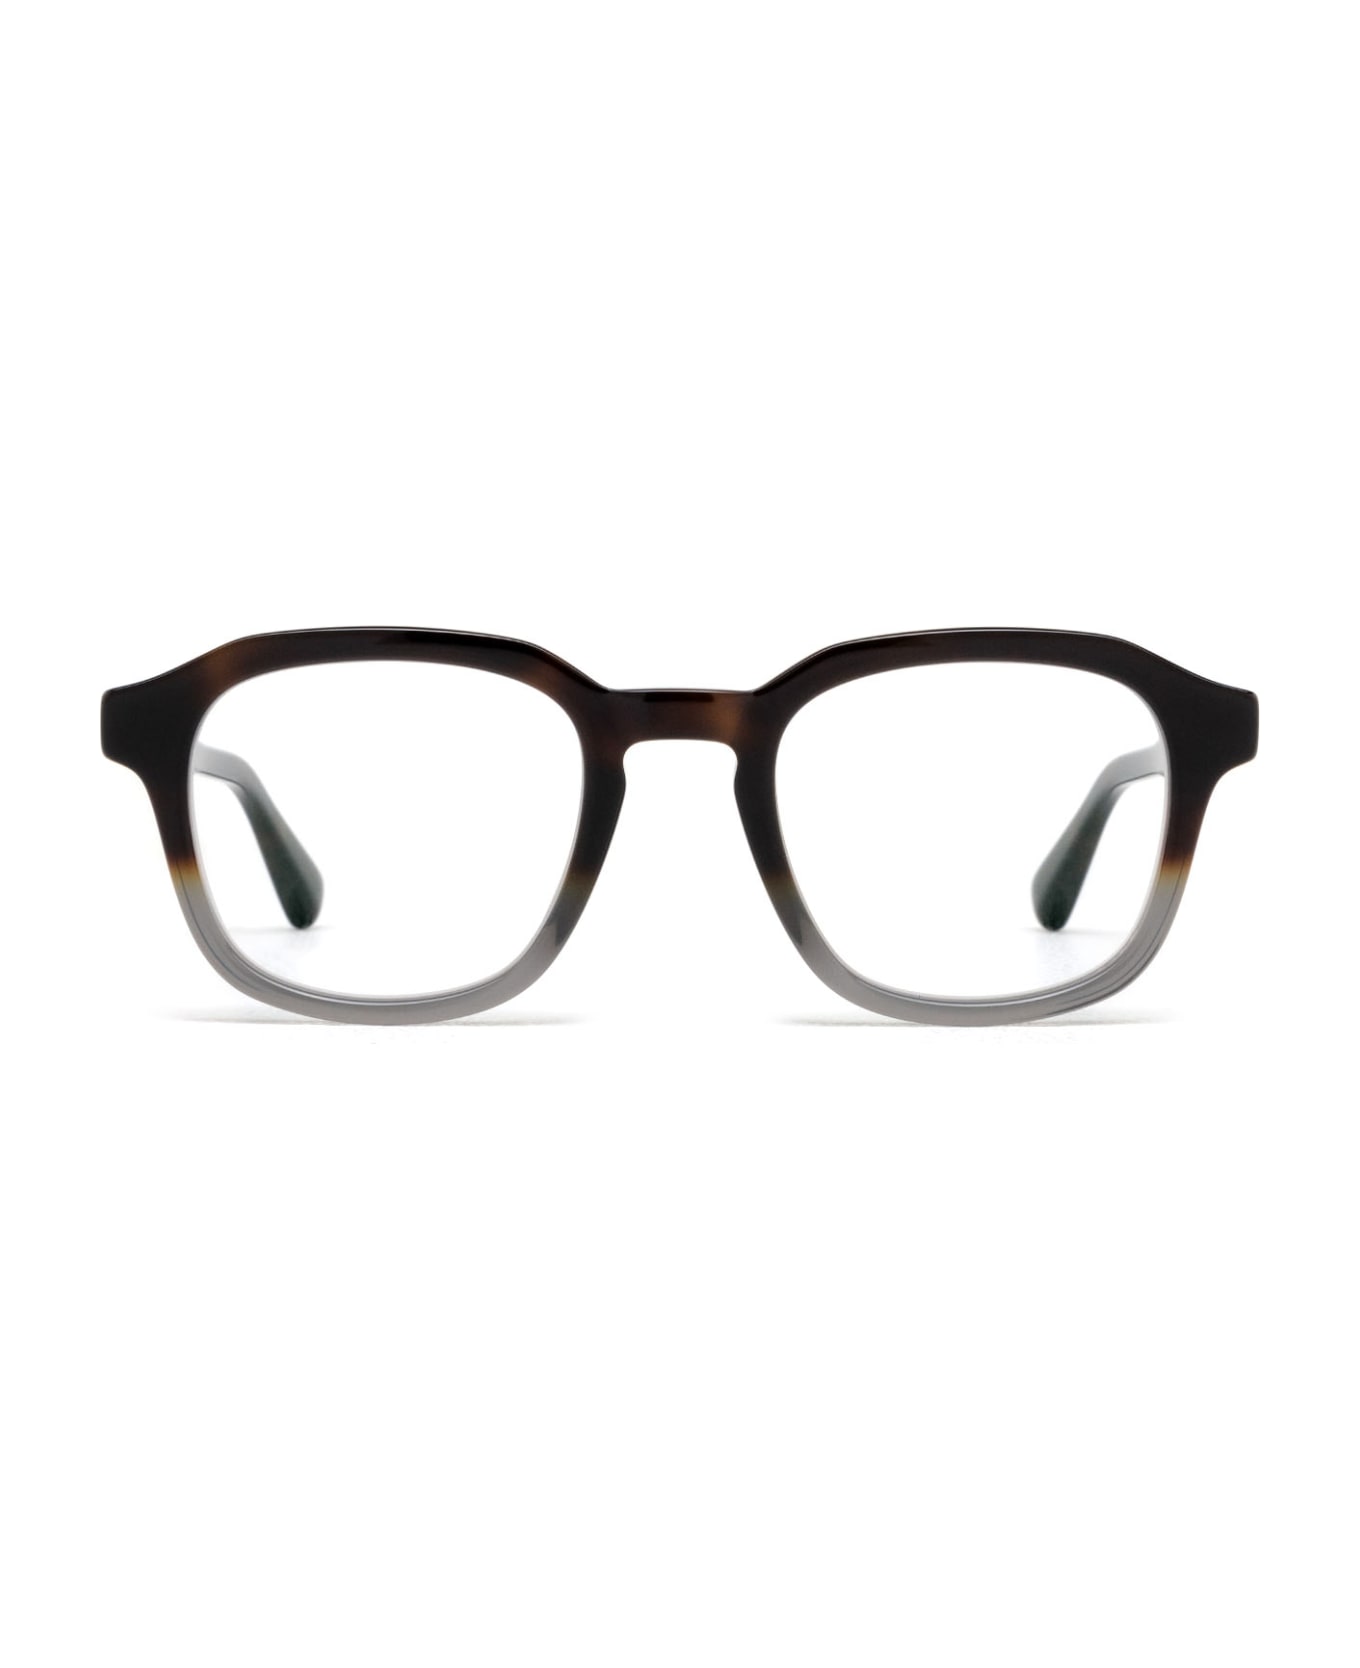 Mykita Badu C140-santiago Grad/shiny Silve Glasses - C140-Santiago Grad/Shiny Silve アイウェア